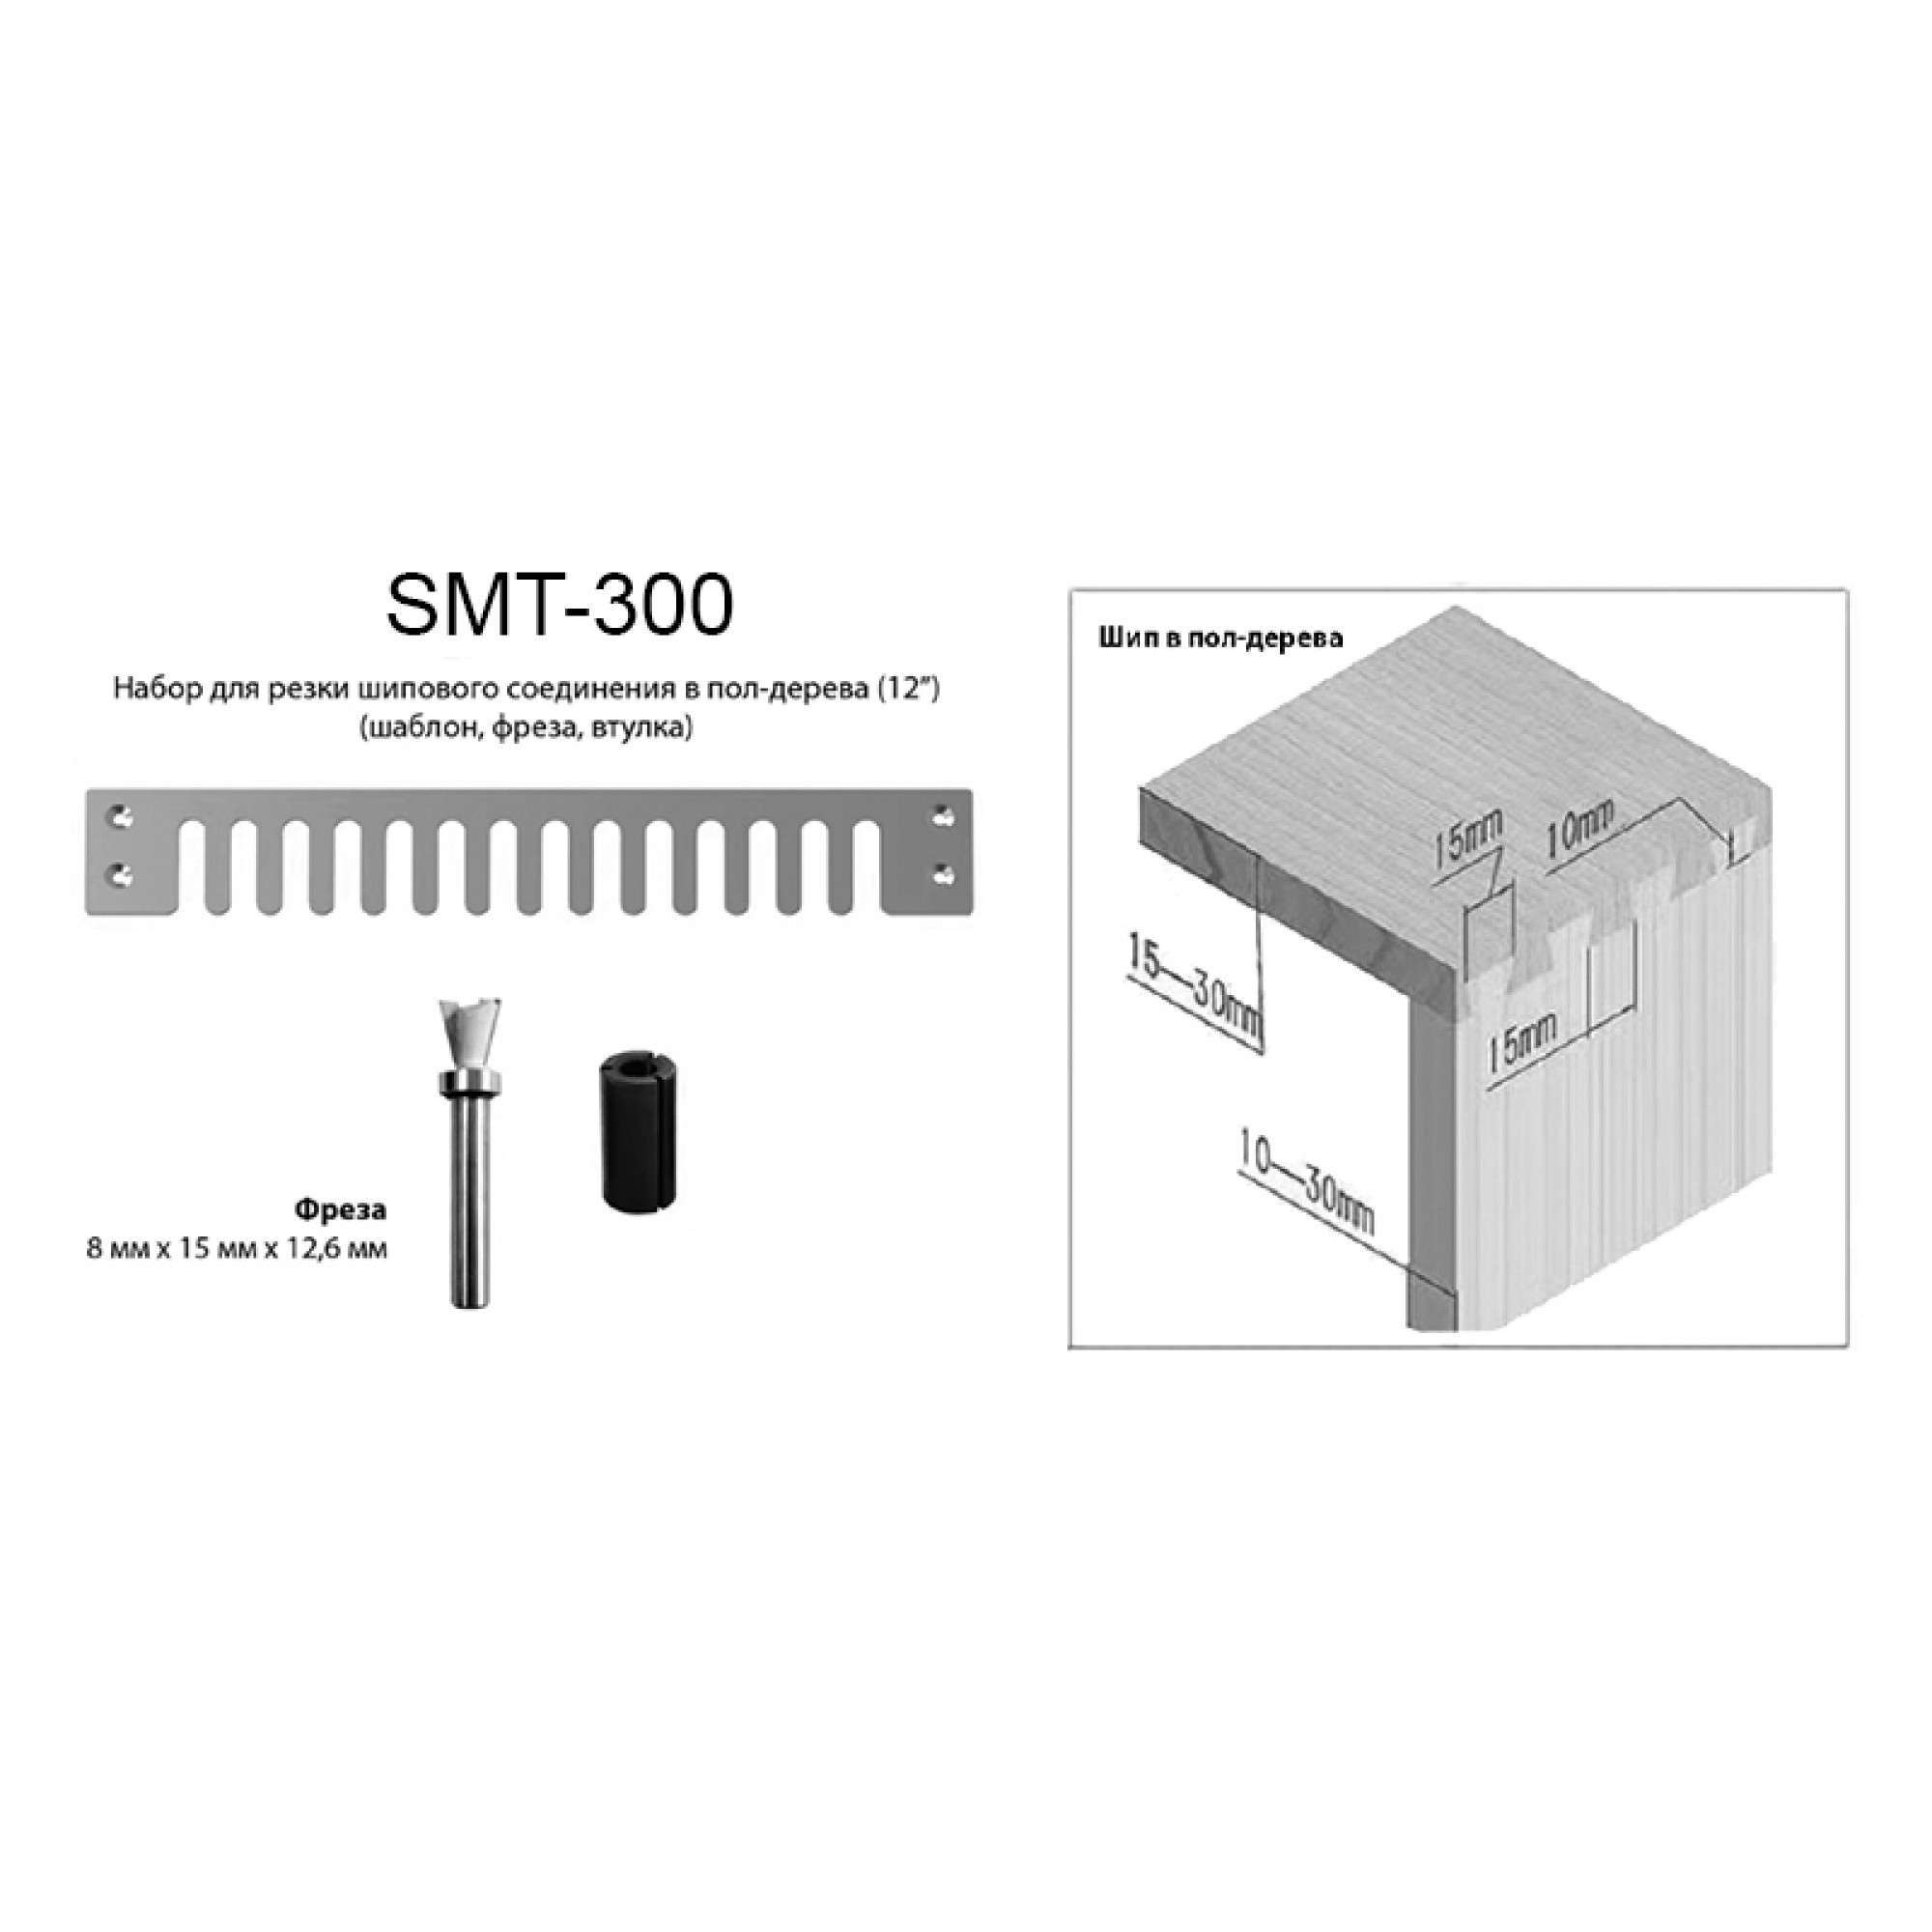 Шаблон для шипорезки CMT300 - сквозное соединение ласточкин хвост